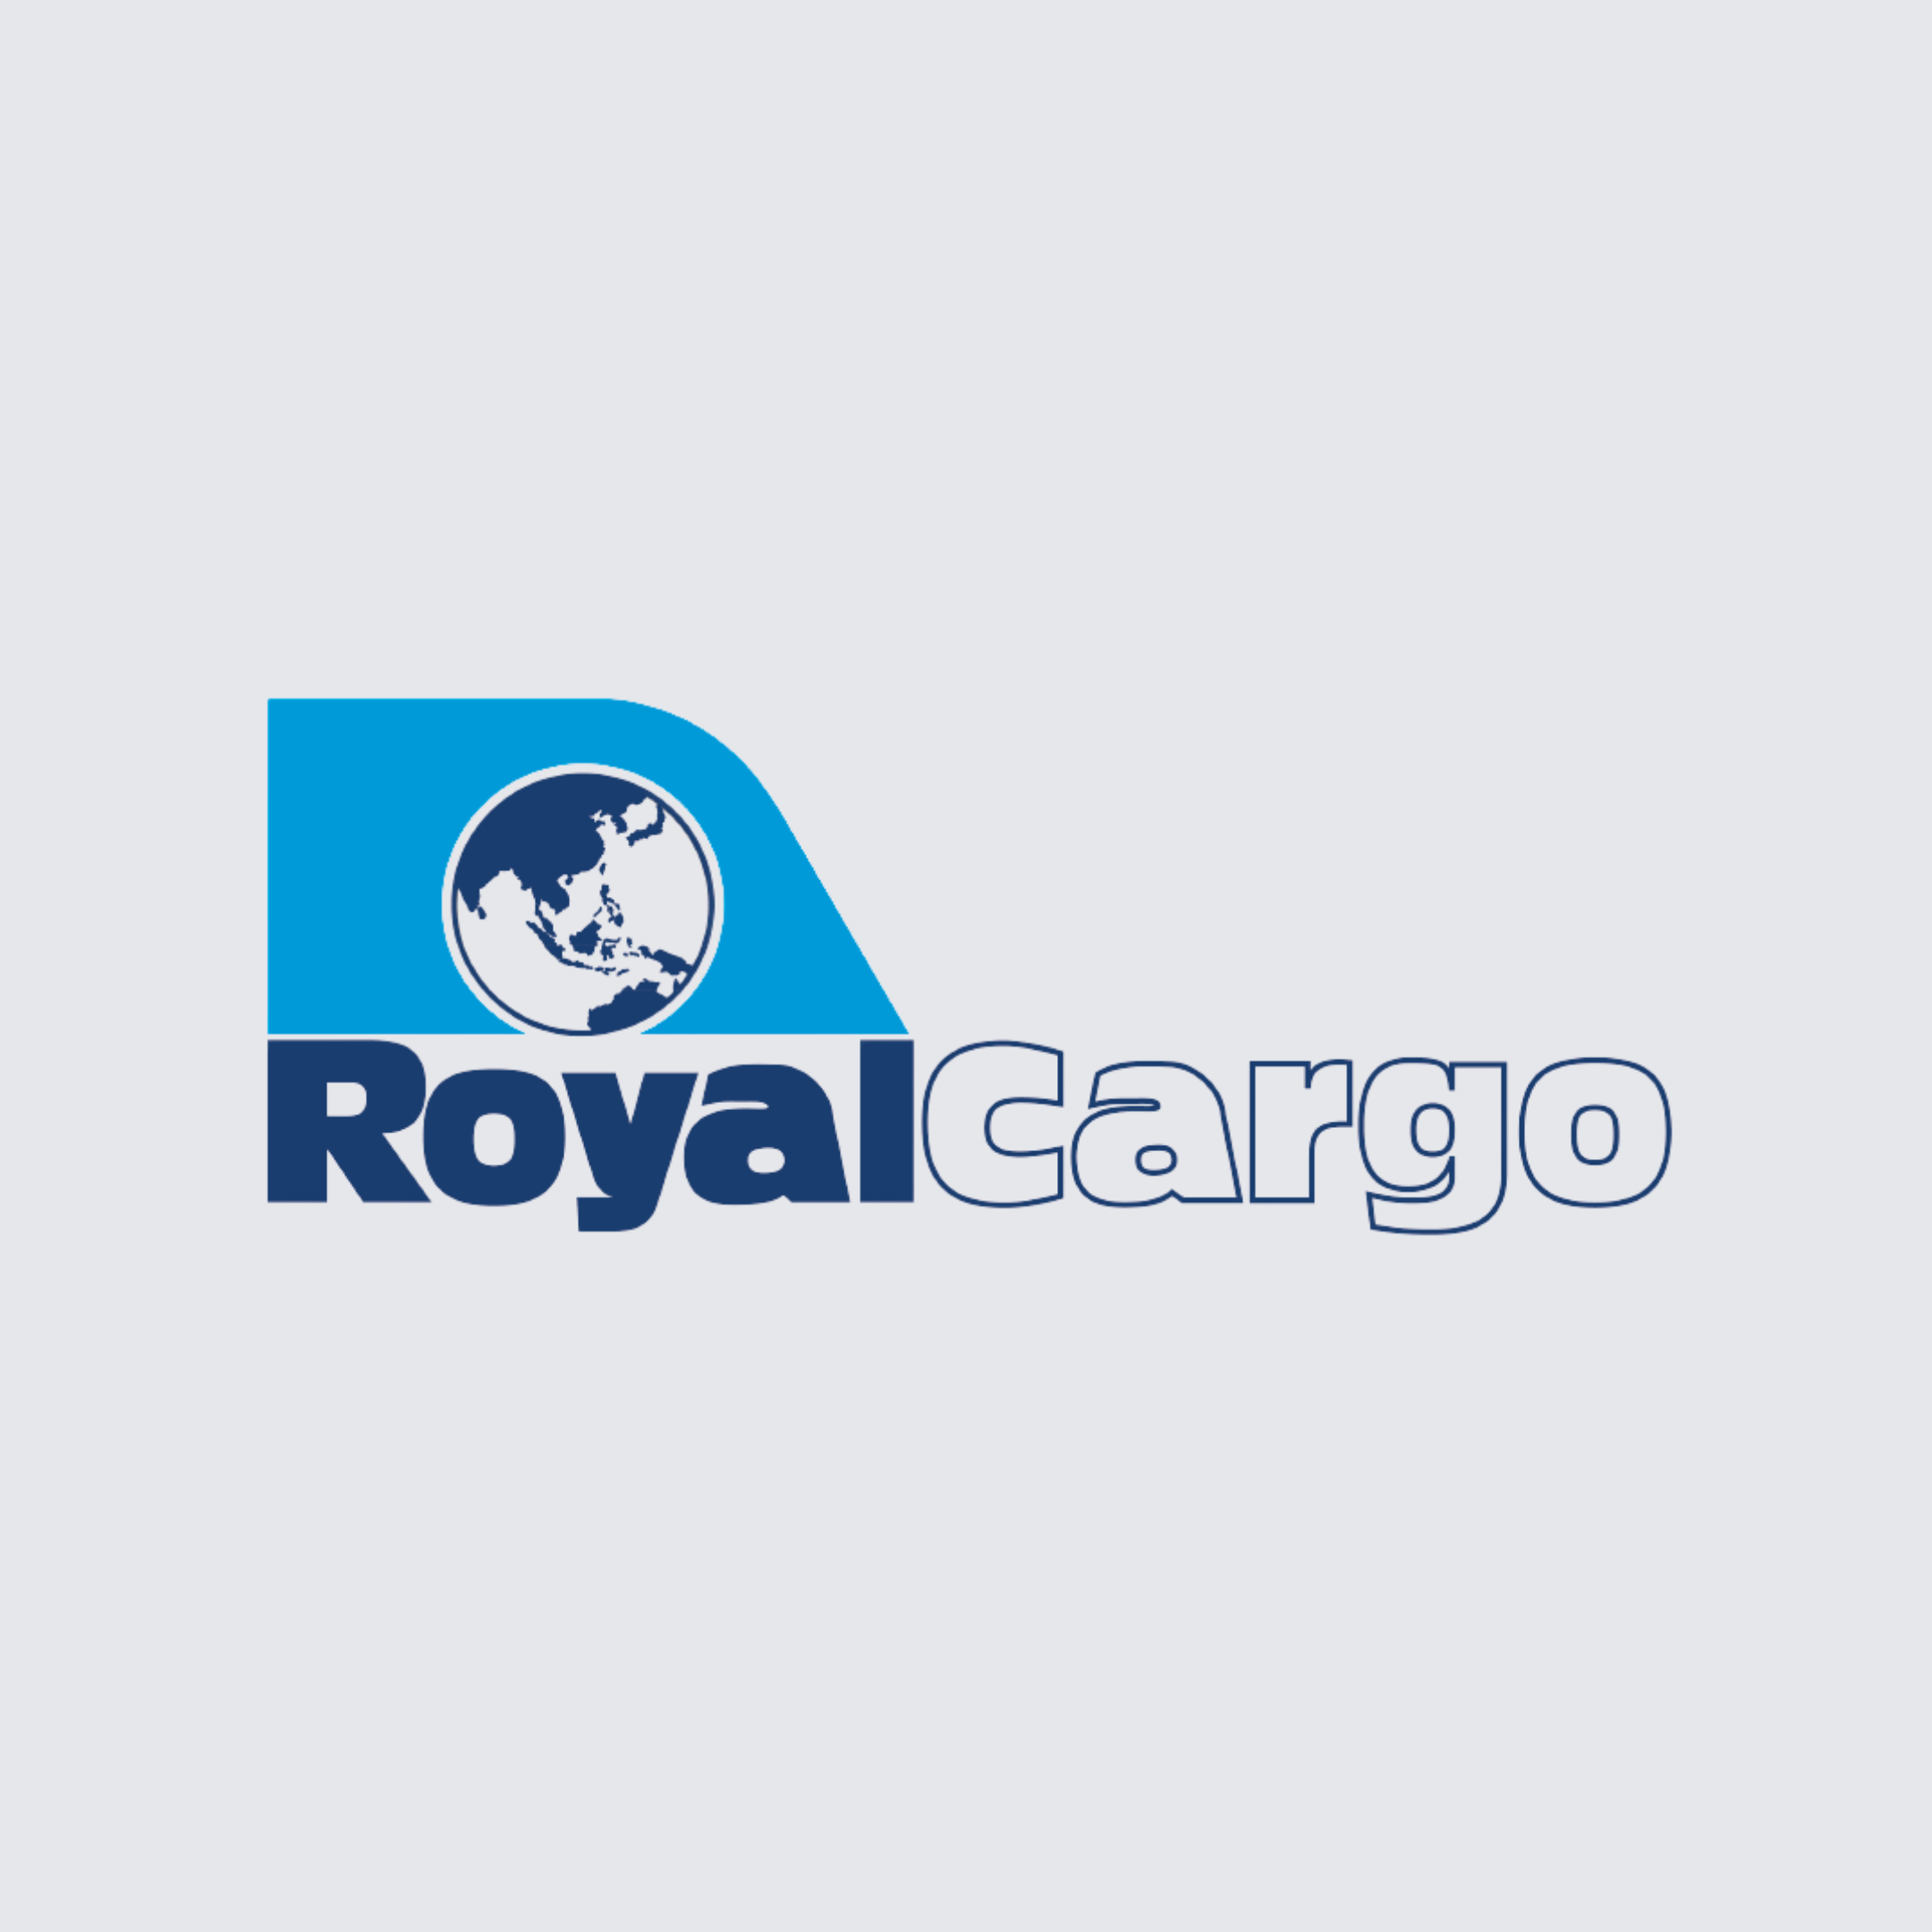 Royal Cargo Inc.